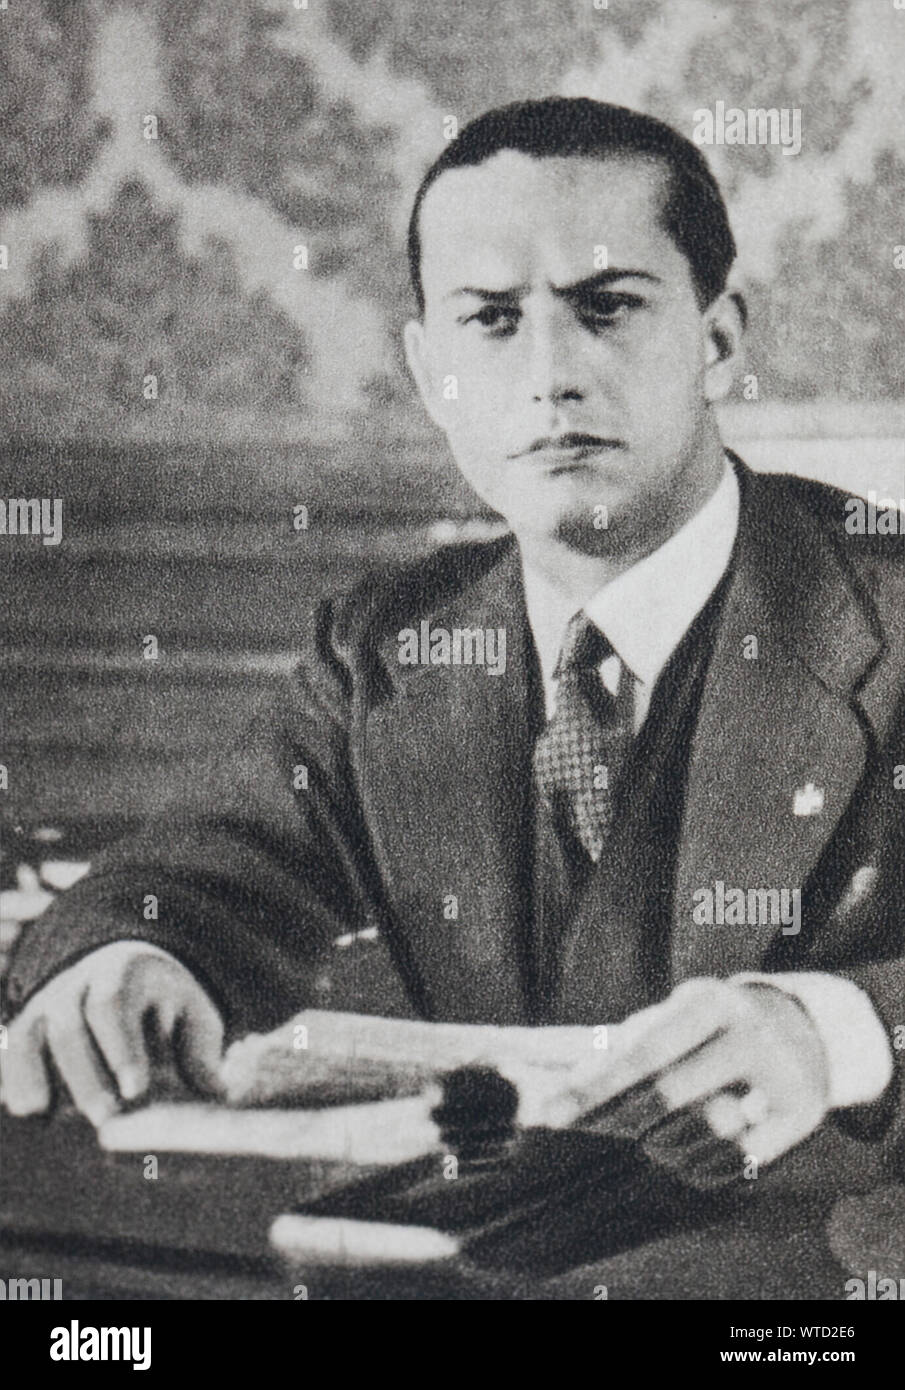 Conde Galeazzo Ciano (1903 - 1944) fue un político italiano, quien se desempeñó como Ministro de Relaciones Exteriores en el gobierno de su suegro, Benito Mussolini, Foto de stock